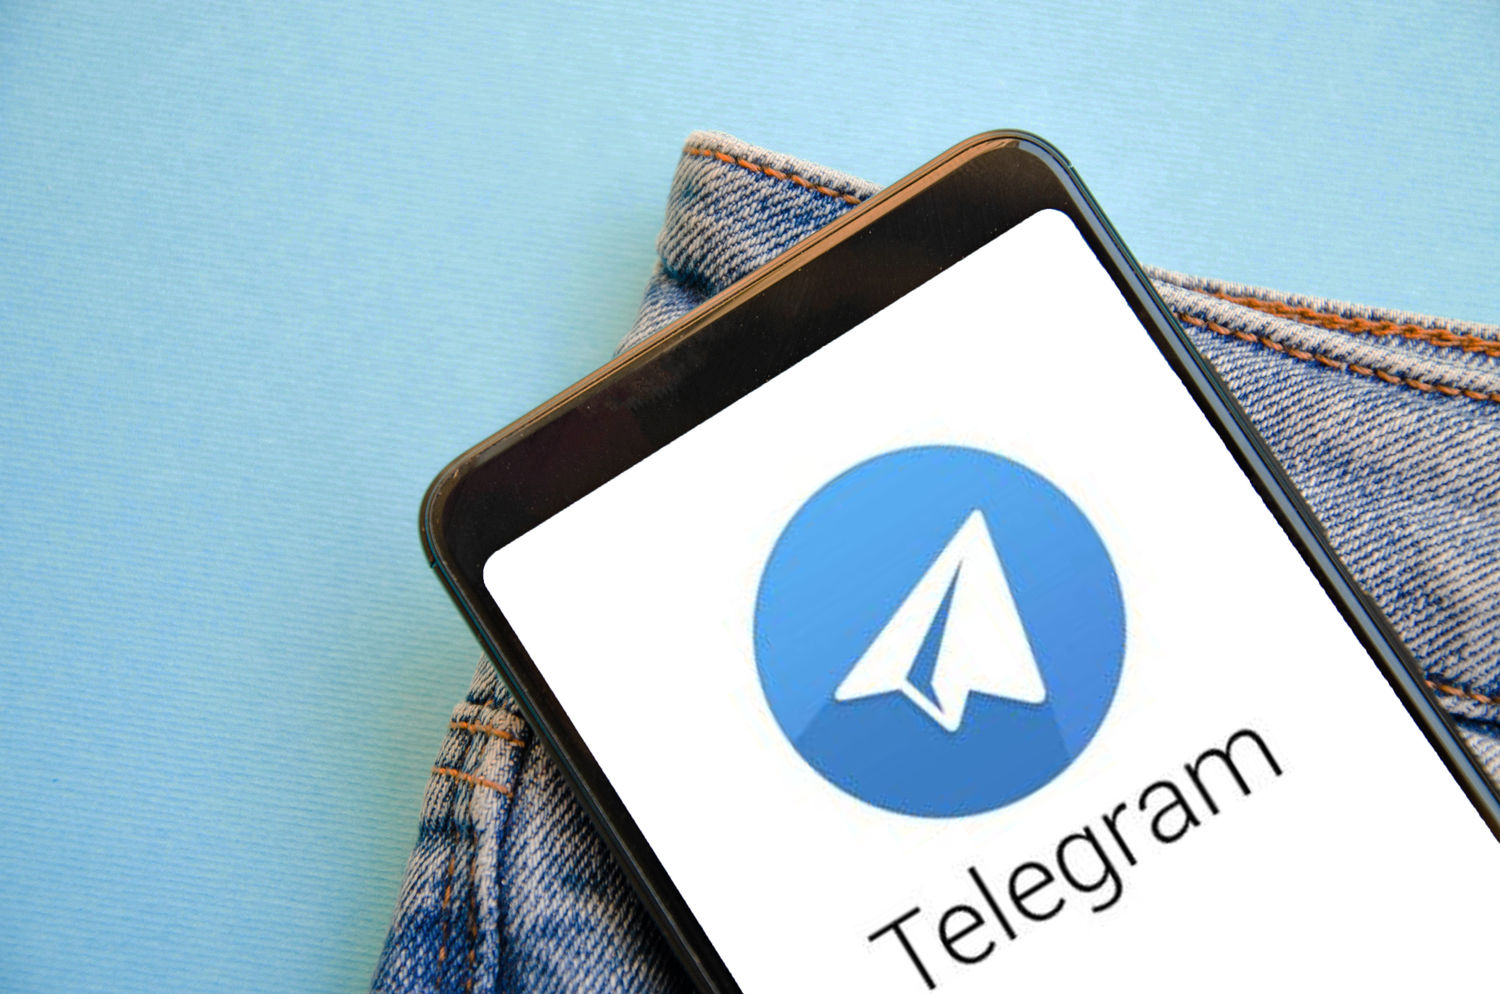 Телеграм: Как найти лучшие и интересные для себя ТГ-каналы